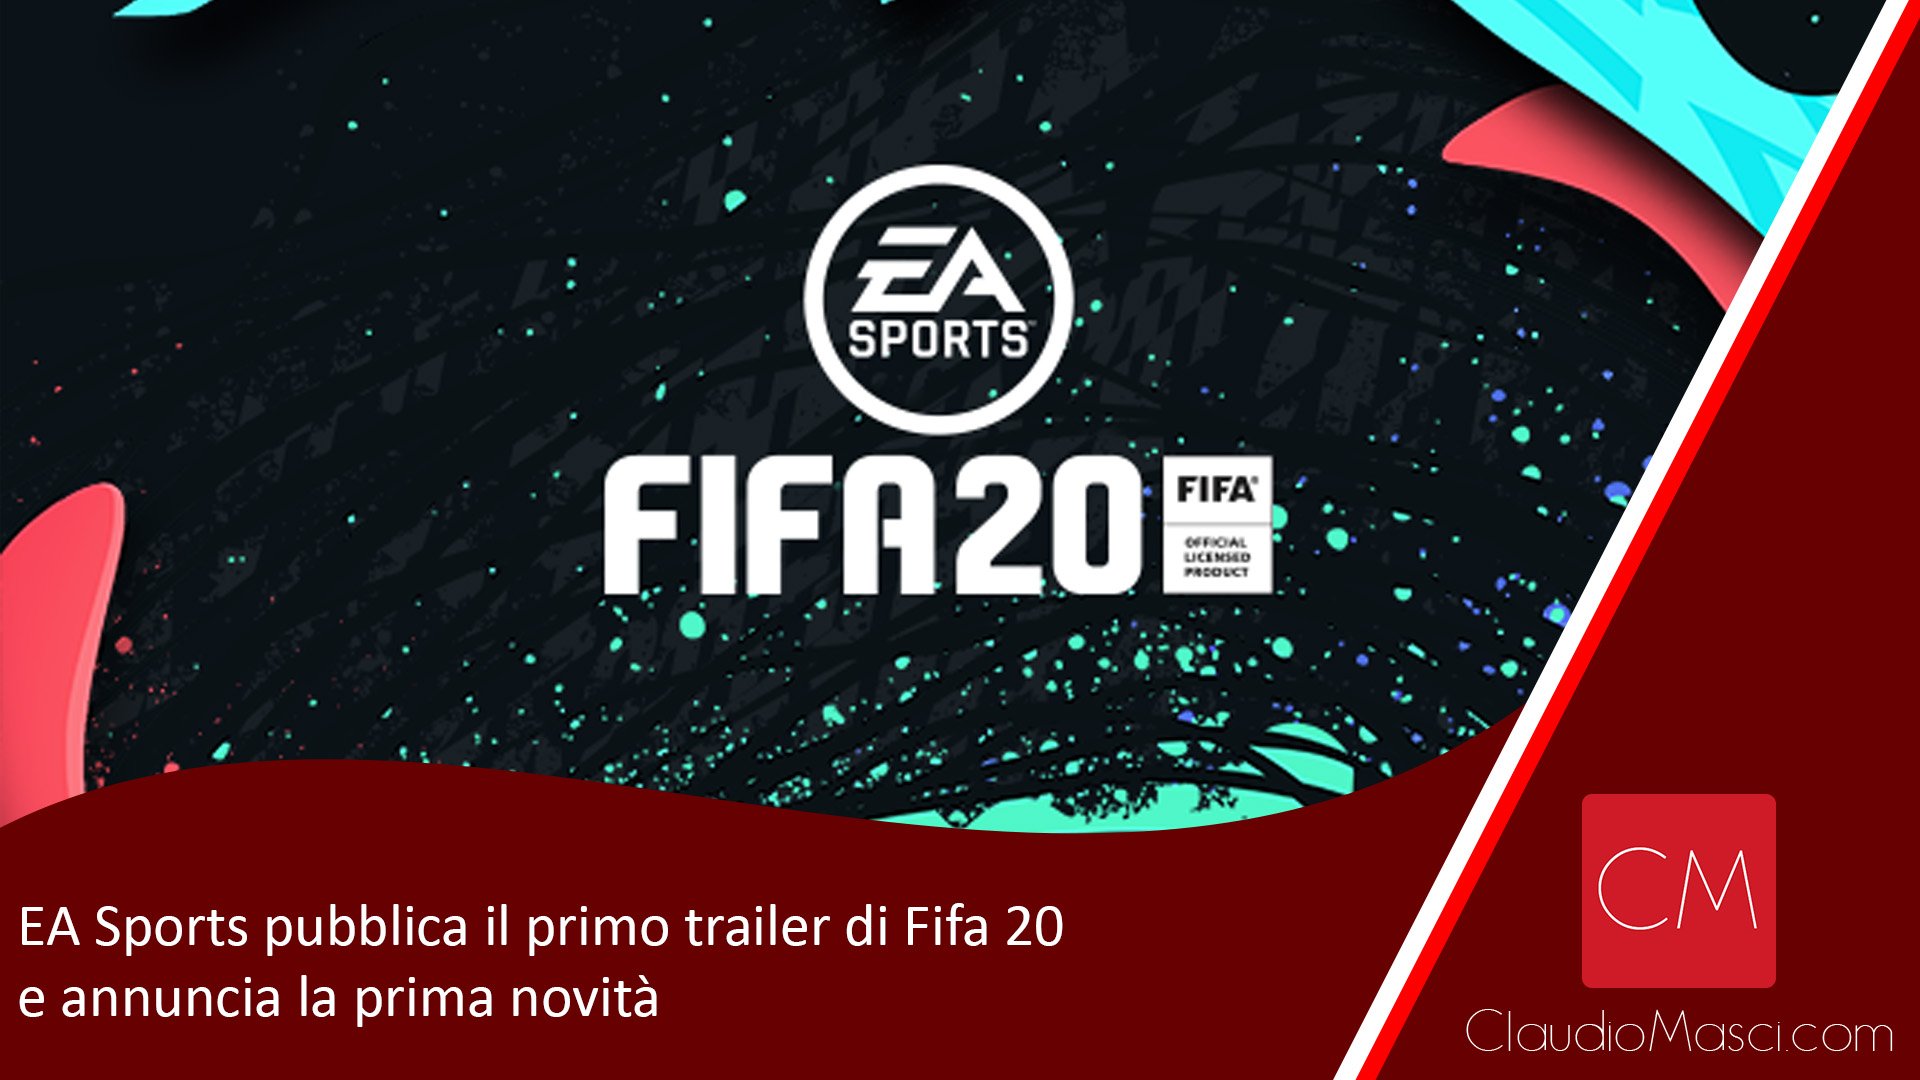 Ea Sports pubblica il primo trailer di Fifa 20 e annuncia la prima novità